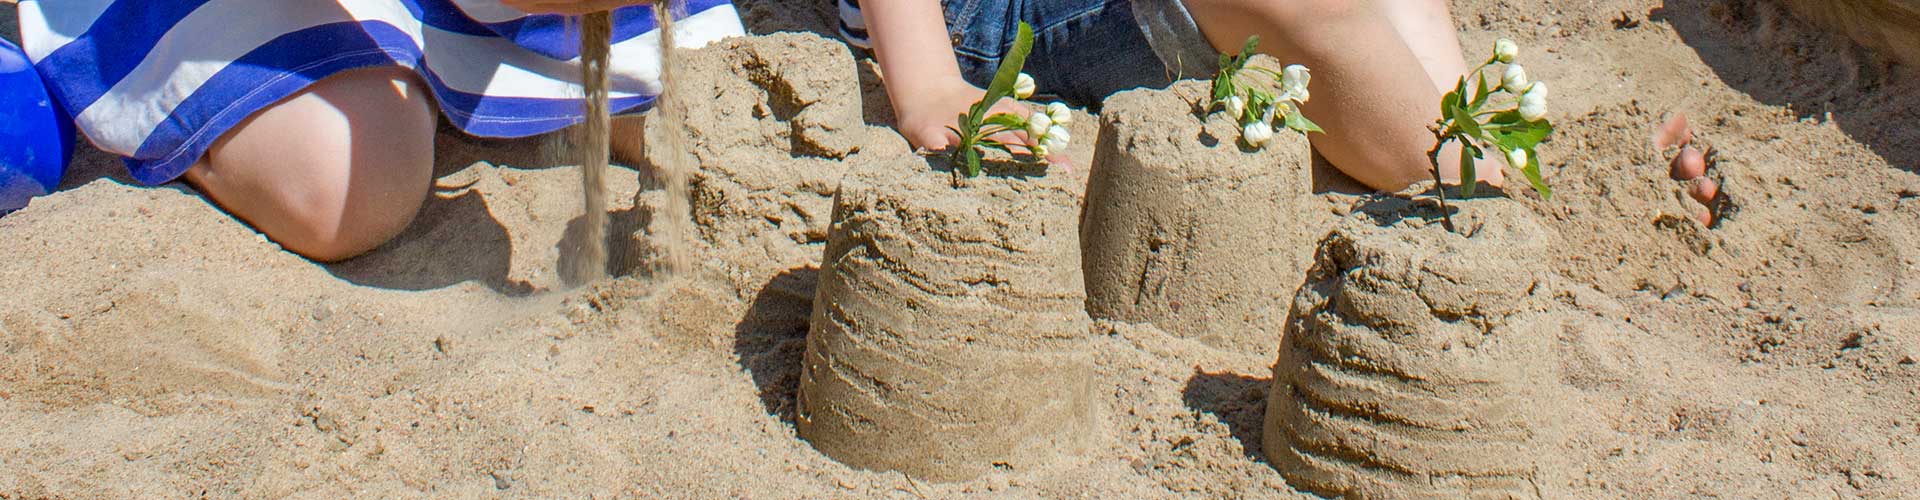 Barn leker i sanden